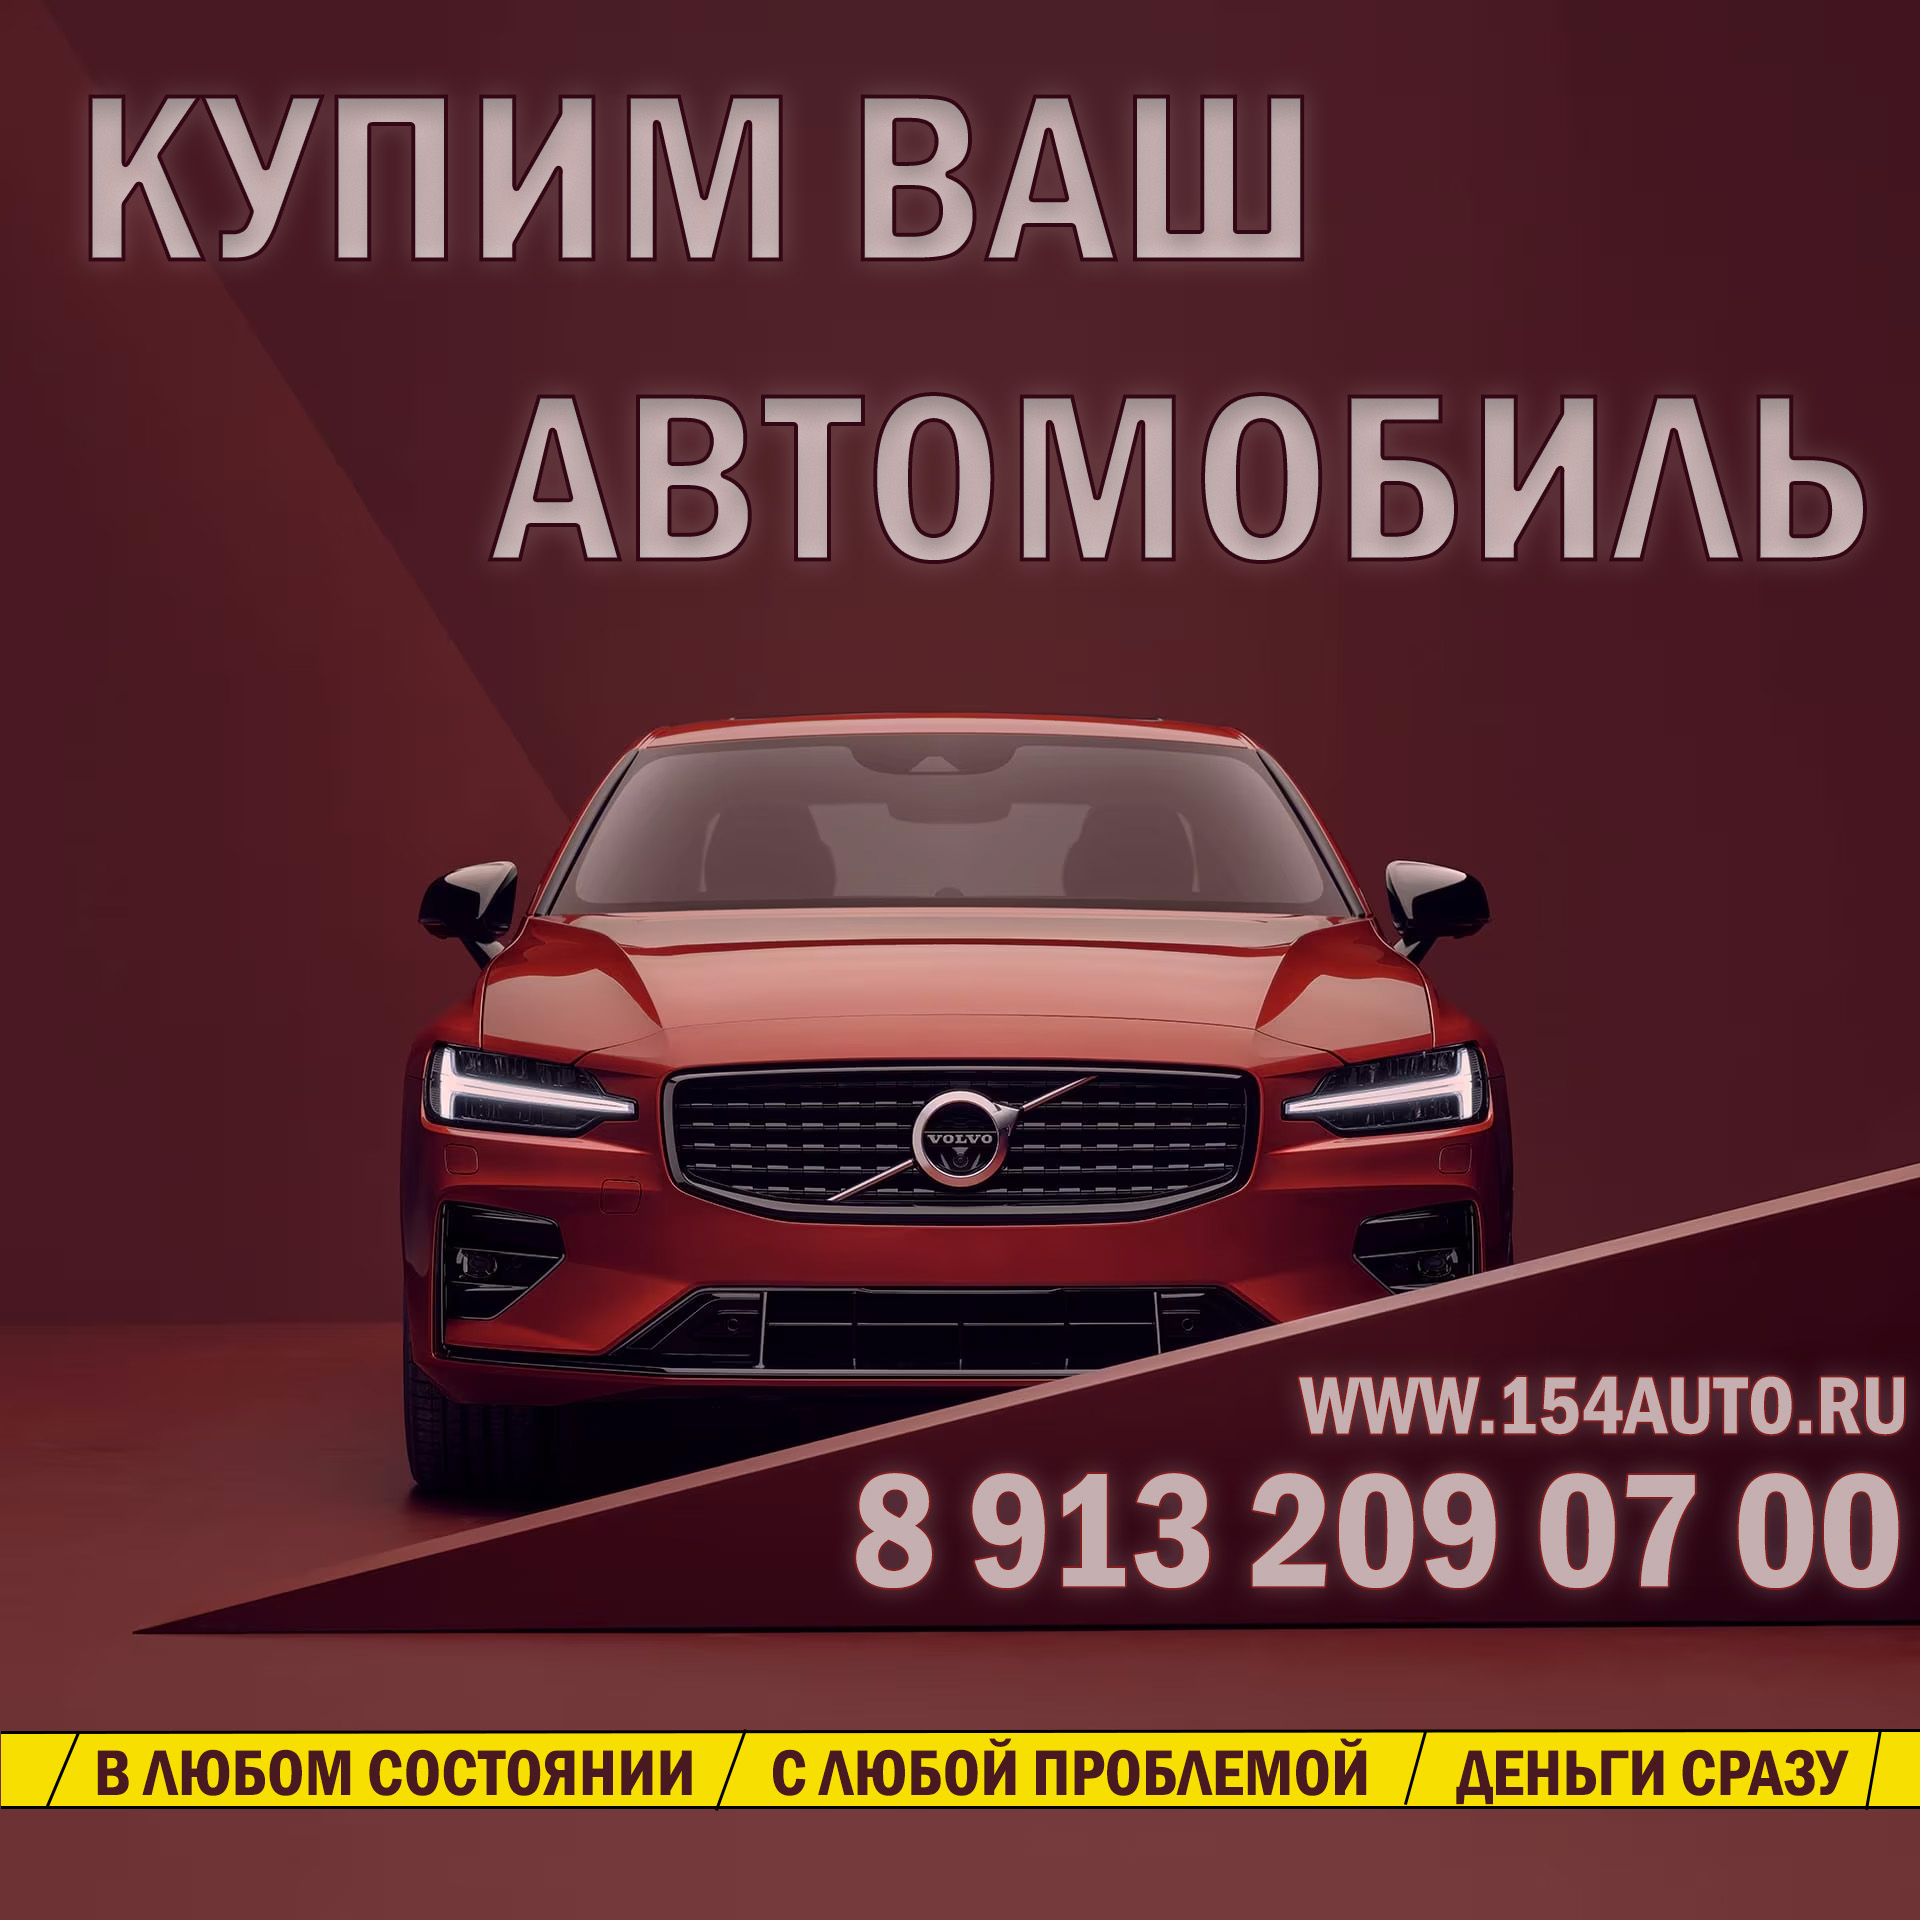 Срочный выкуп авто в Новосибирске и НСО